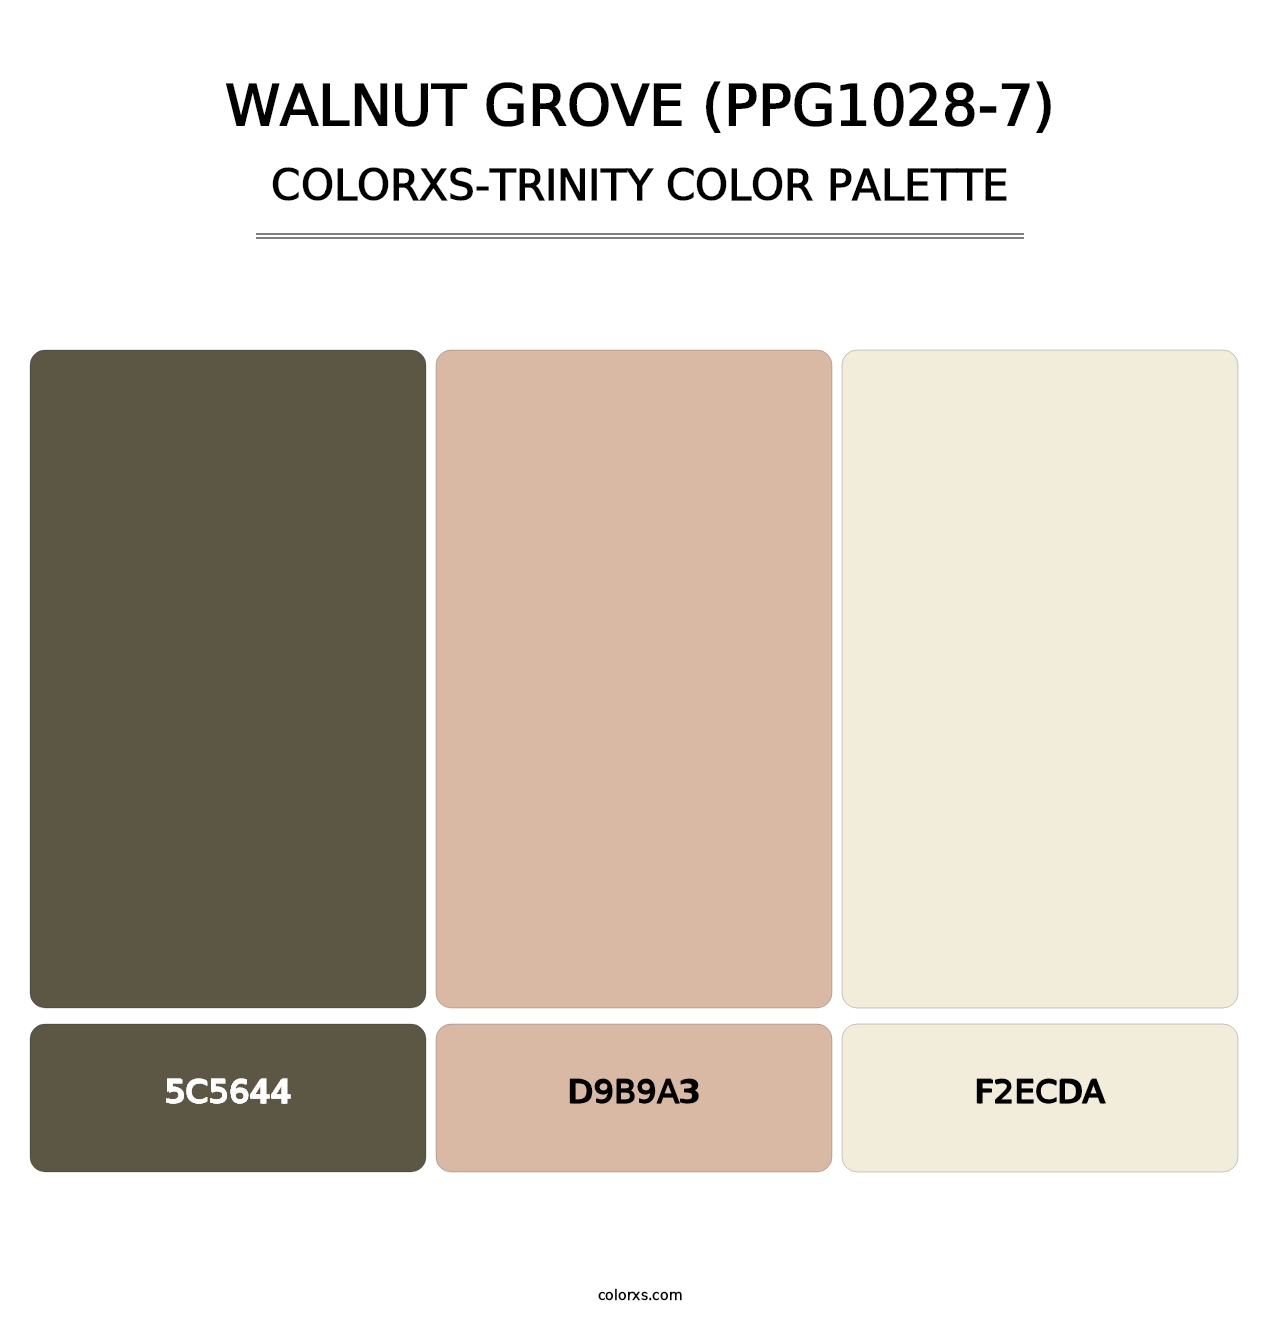 Walnut Grove (PPG1028-7) - Colorxs Trinity Palette